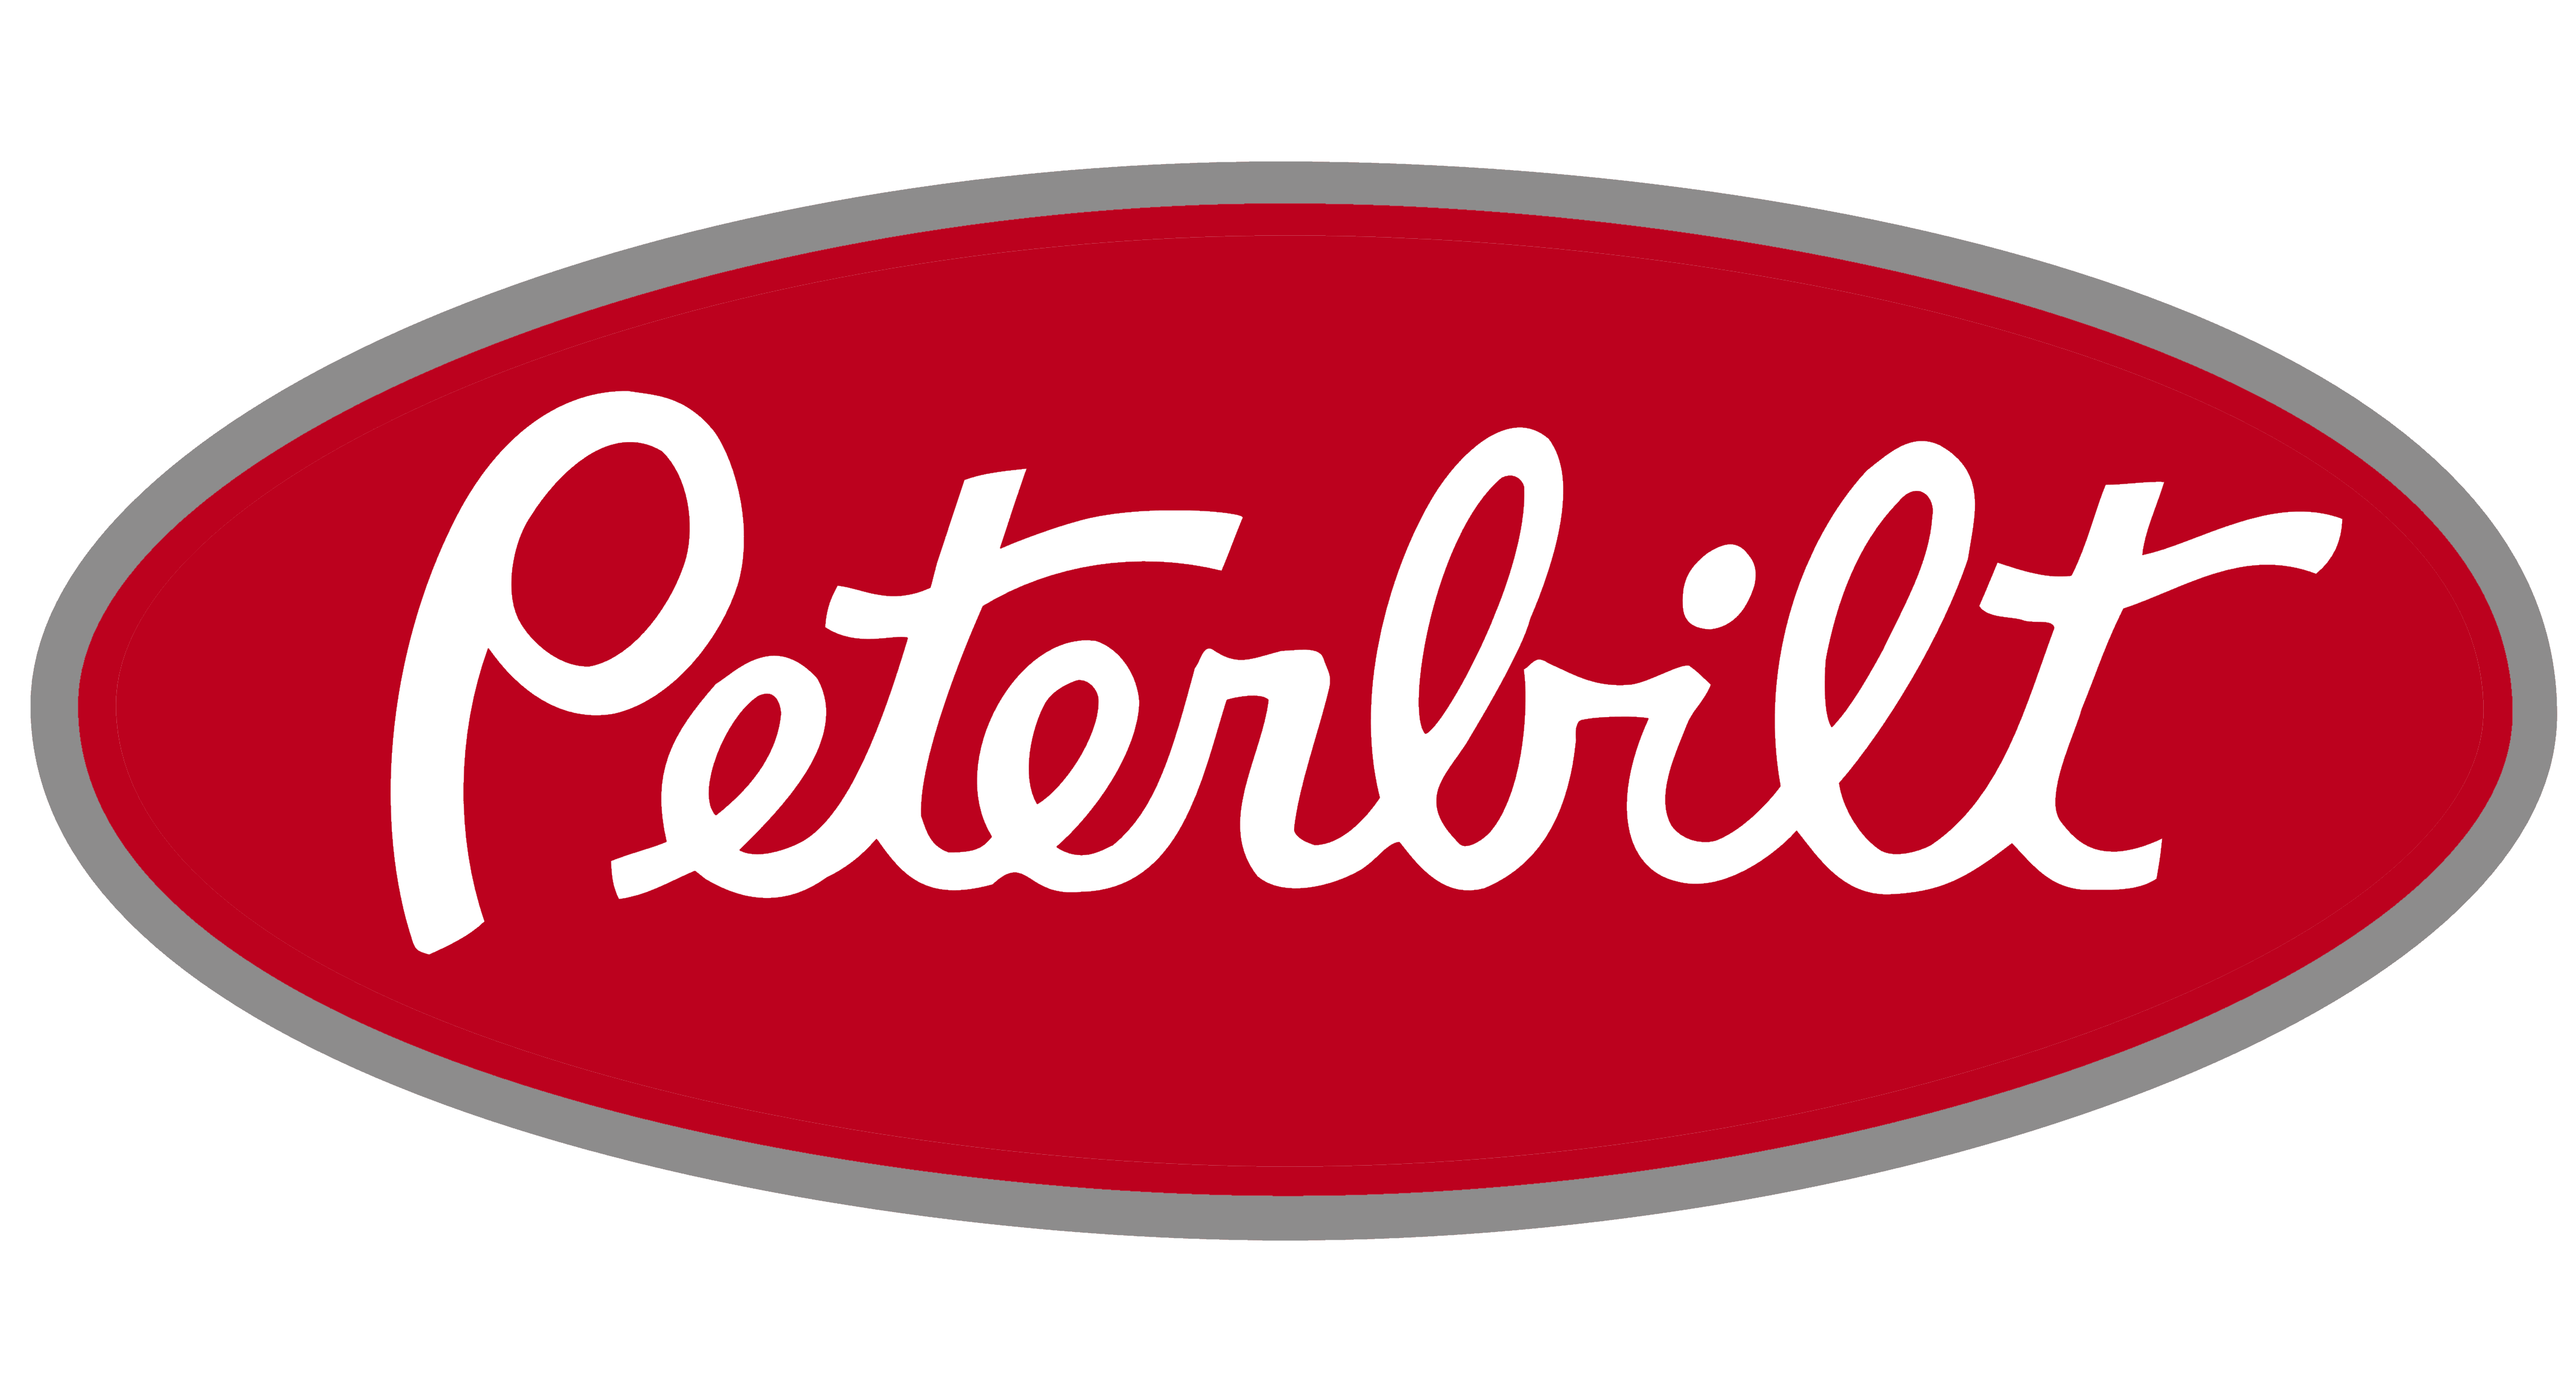 Peterbilt logo, logotype